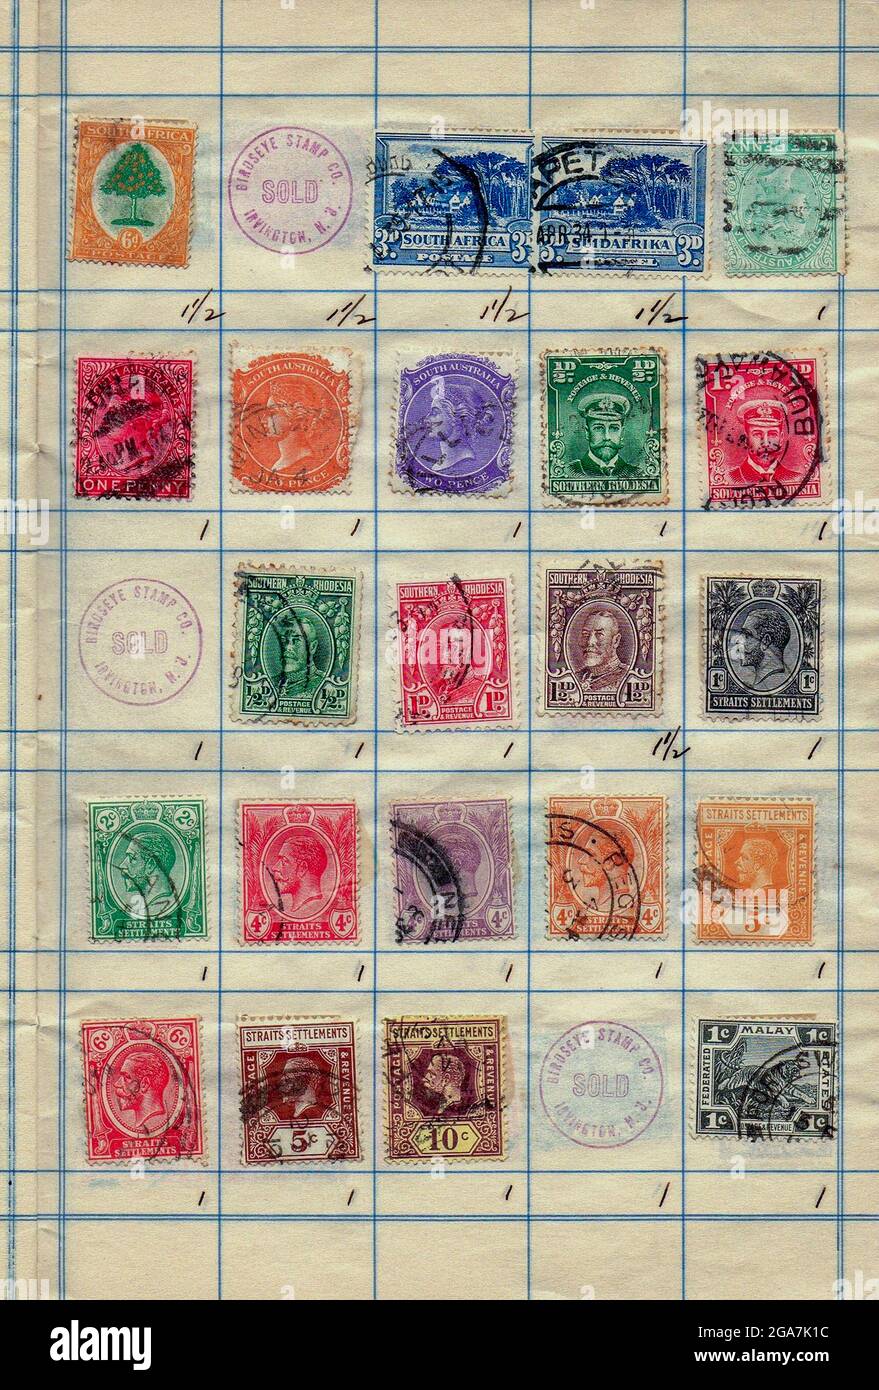 Une collection de timbres anciens de la Rhodésie du Sud, de l'Union de l'Afrique du Sud, de l'Australie du Sud et des établissements du détroit. Philatélie est l'étude des timbres-poste et de l'histoire postale. Banque D'Images